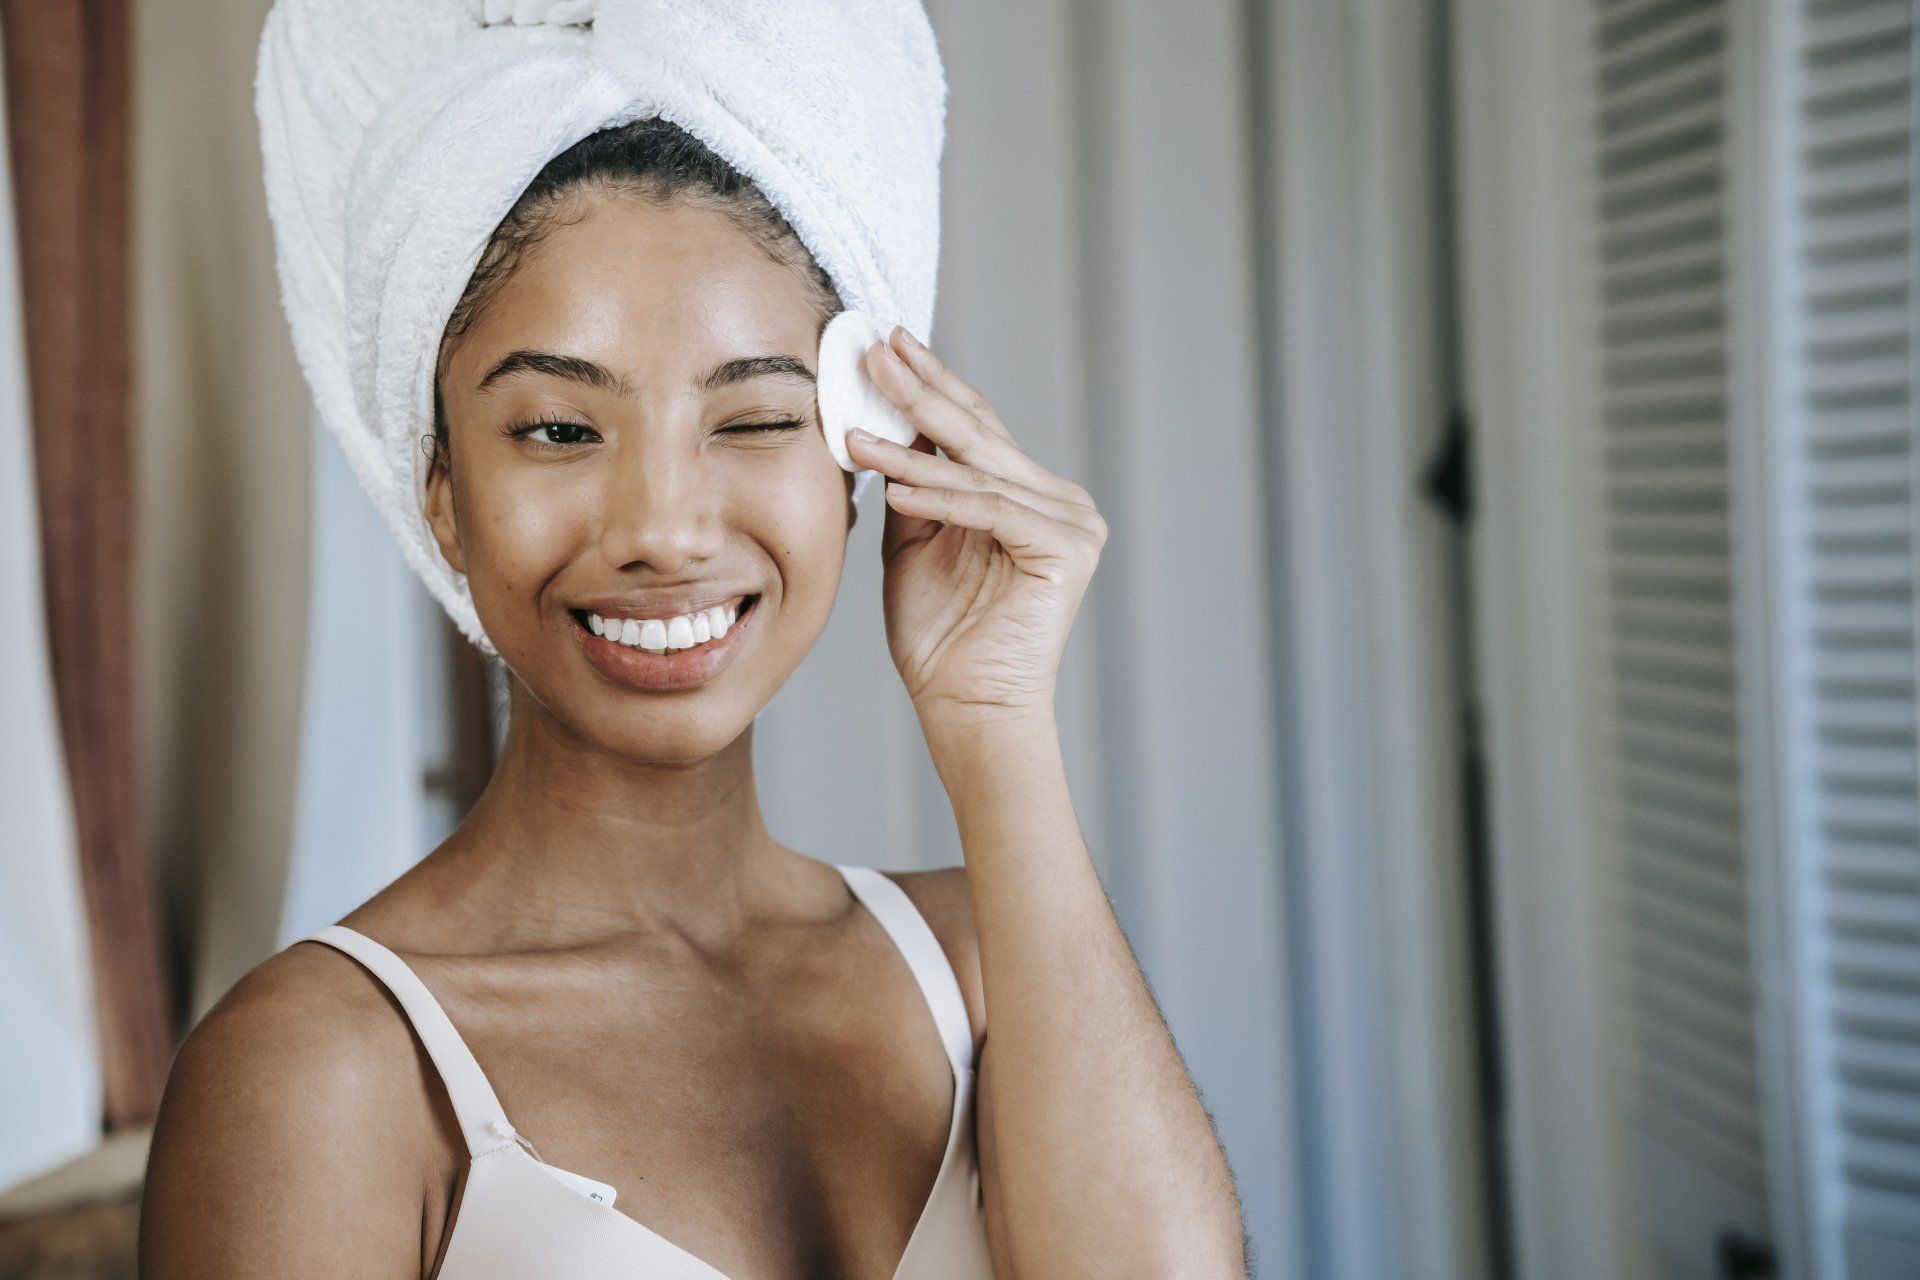 Woman Smiling With Towel in Hair | Gum Disease Dentist in Weston FL 33326